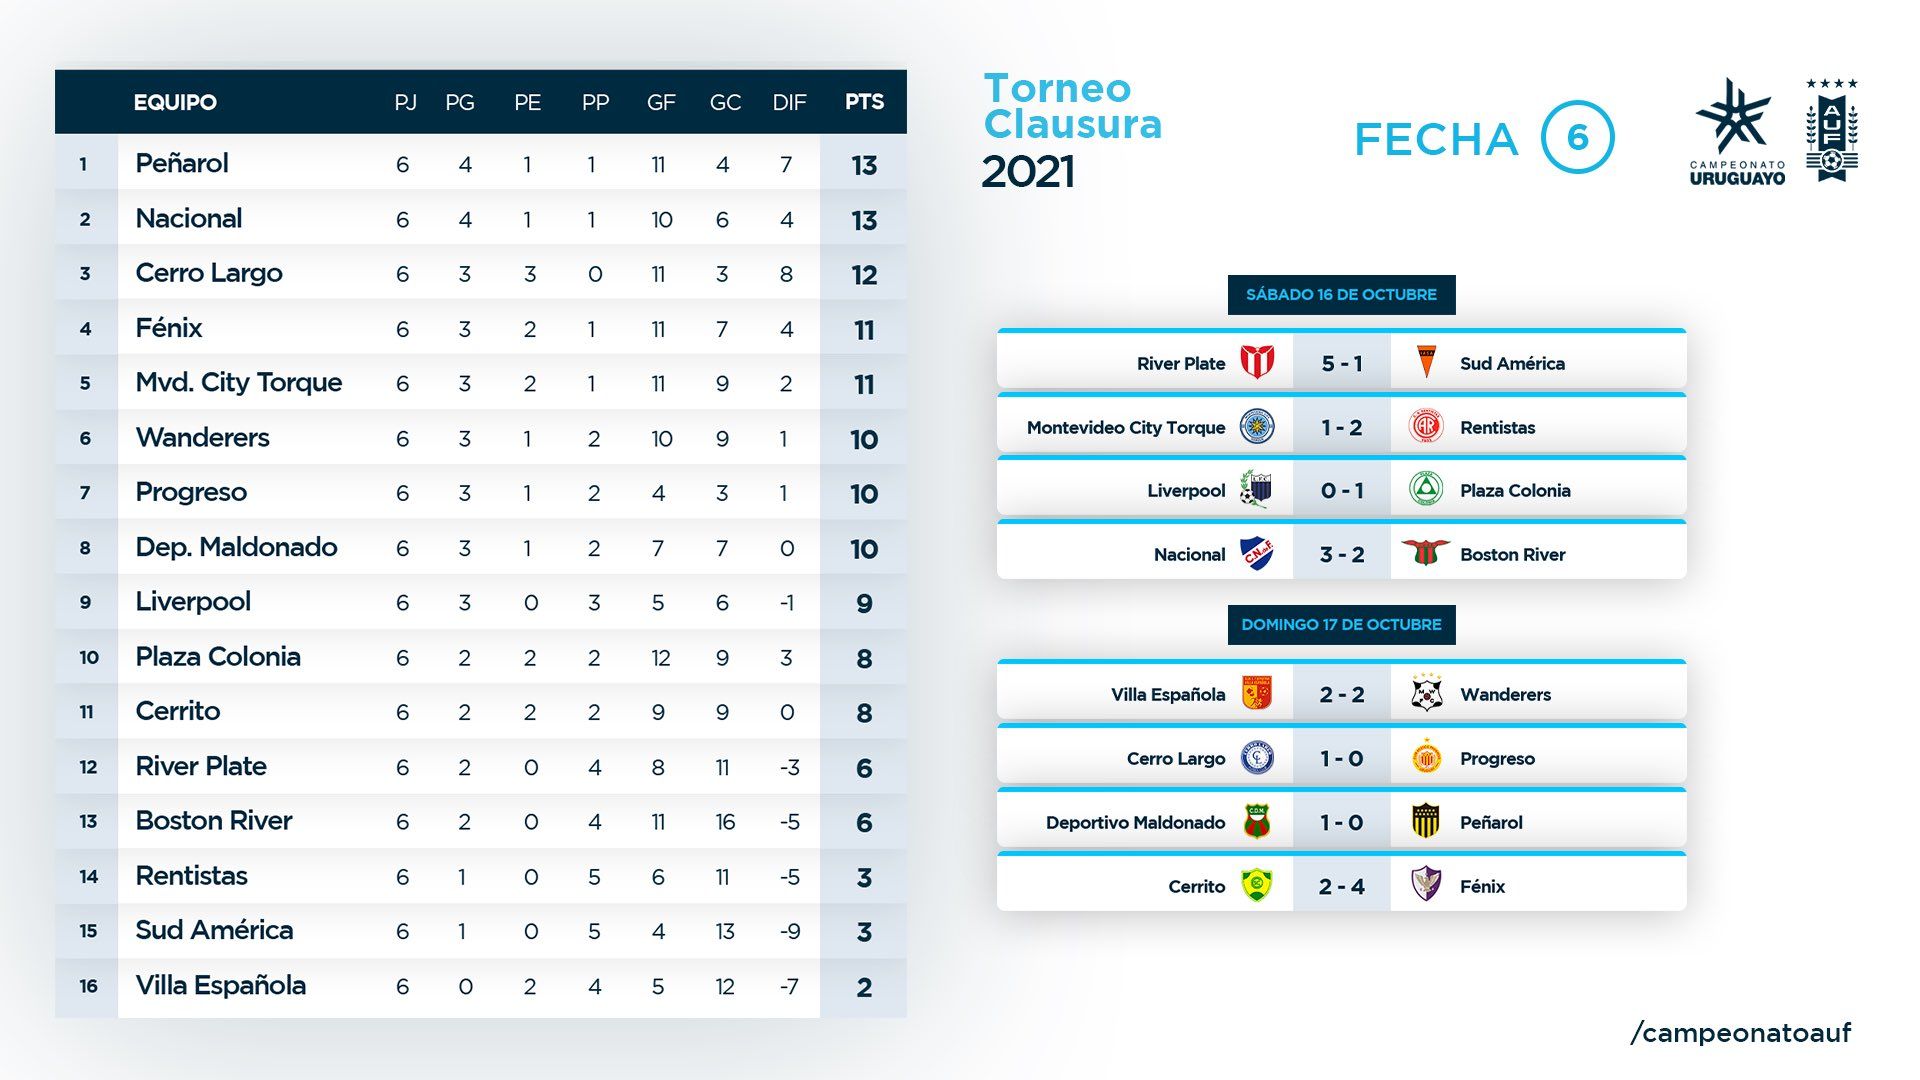 Tabla de posiciones del Campeonato Uruguayo 2023 - Noticias Uruguay,  LARED21 Diario Digital